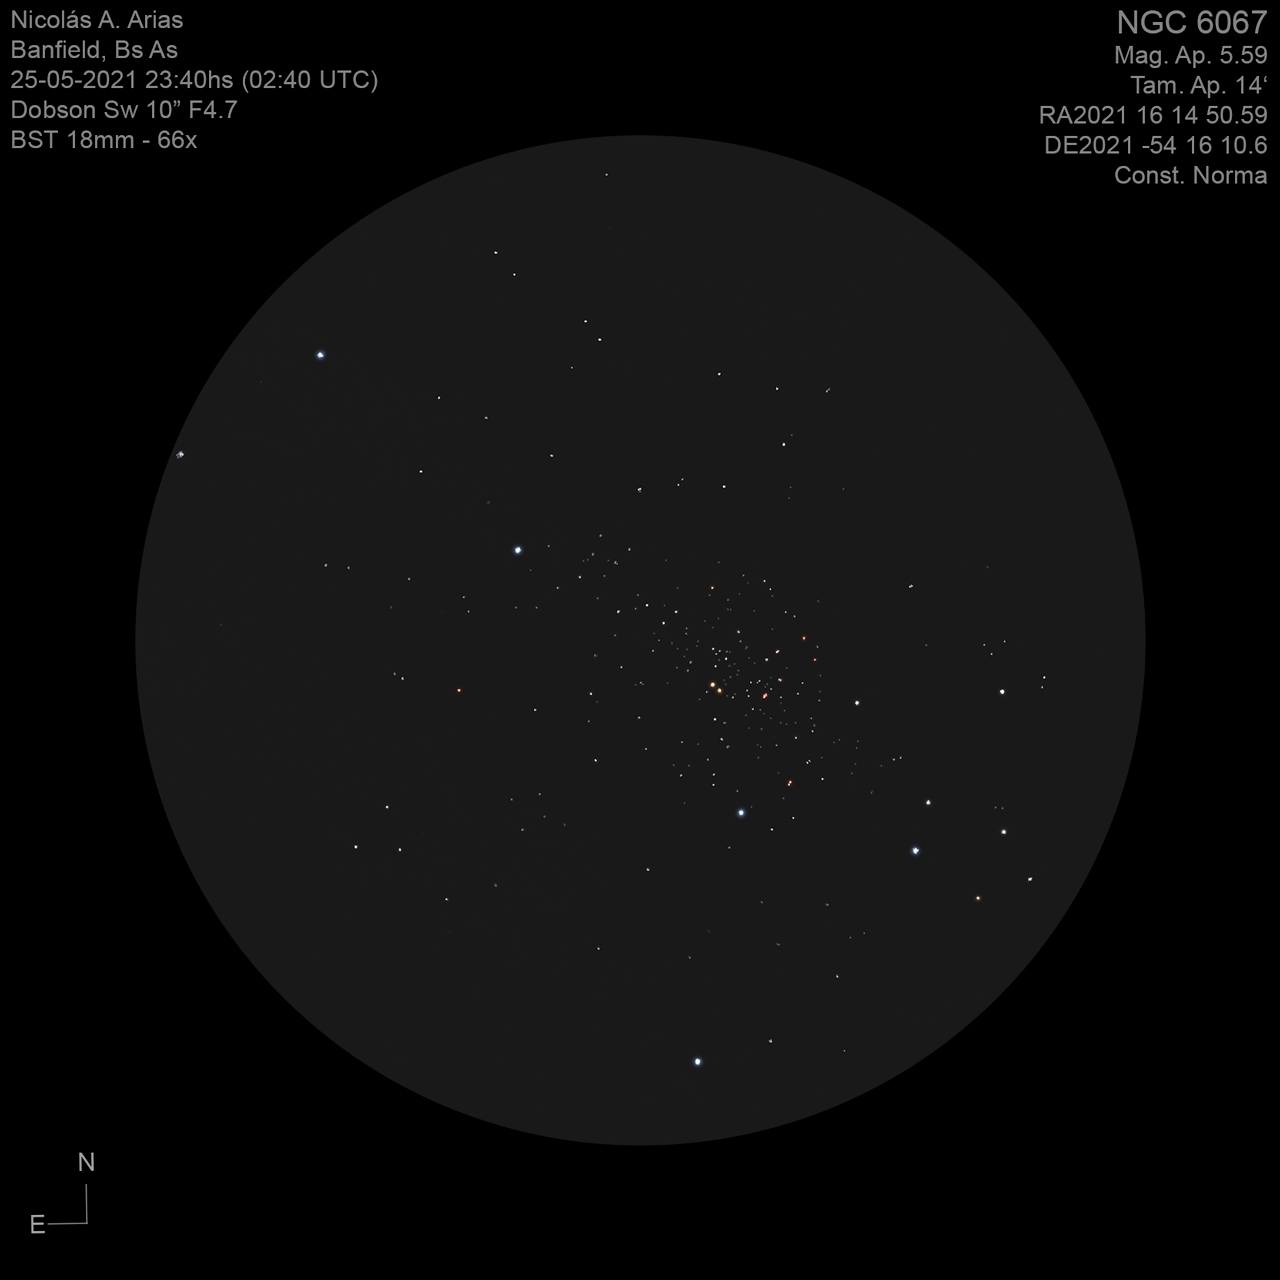 NGC6067-25-5-2021-66x.jpg.22e37b254dd52ab0096c3361c3da7f47.jpg